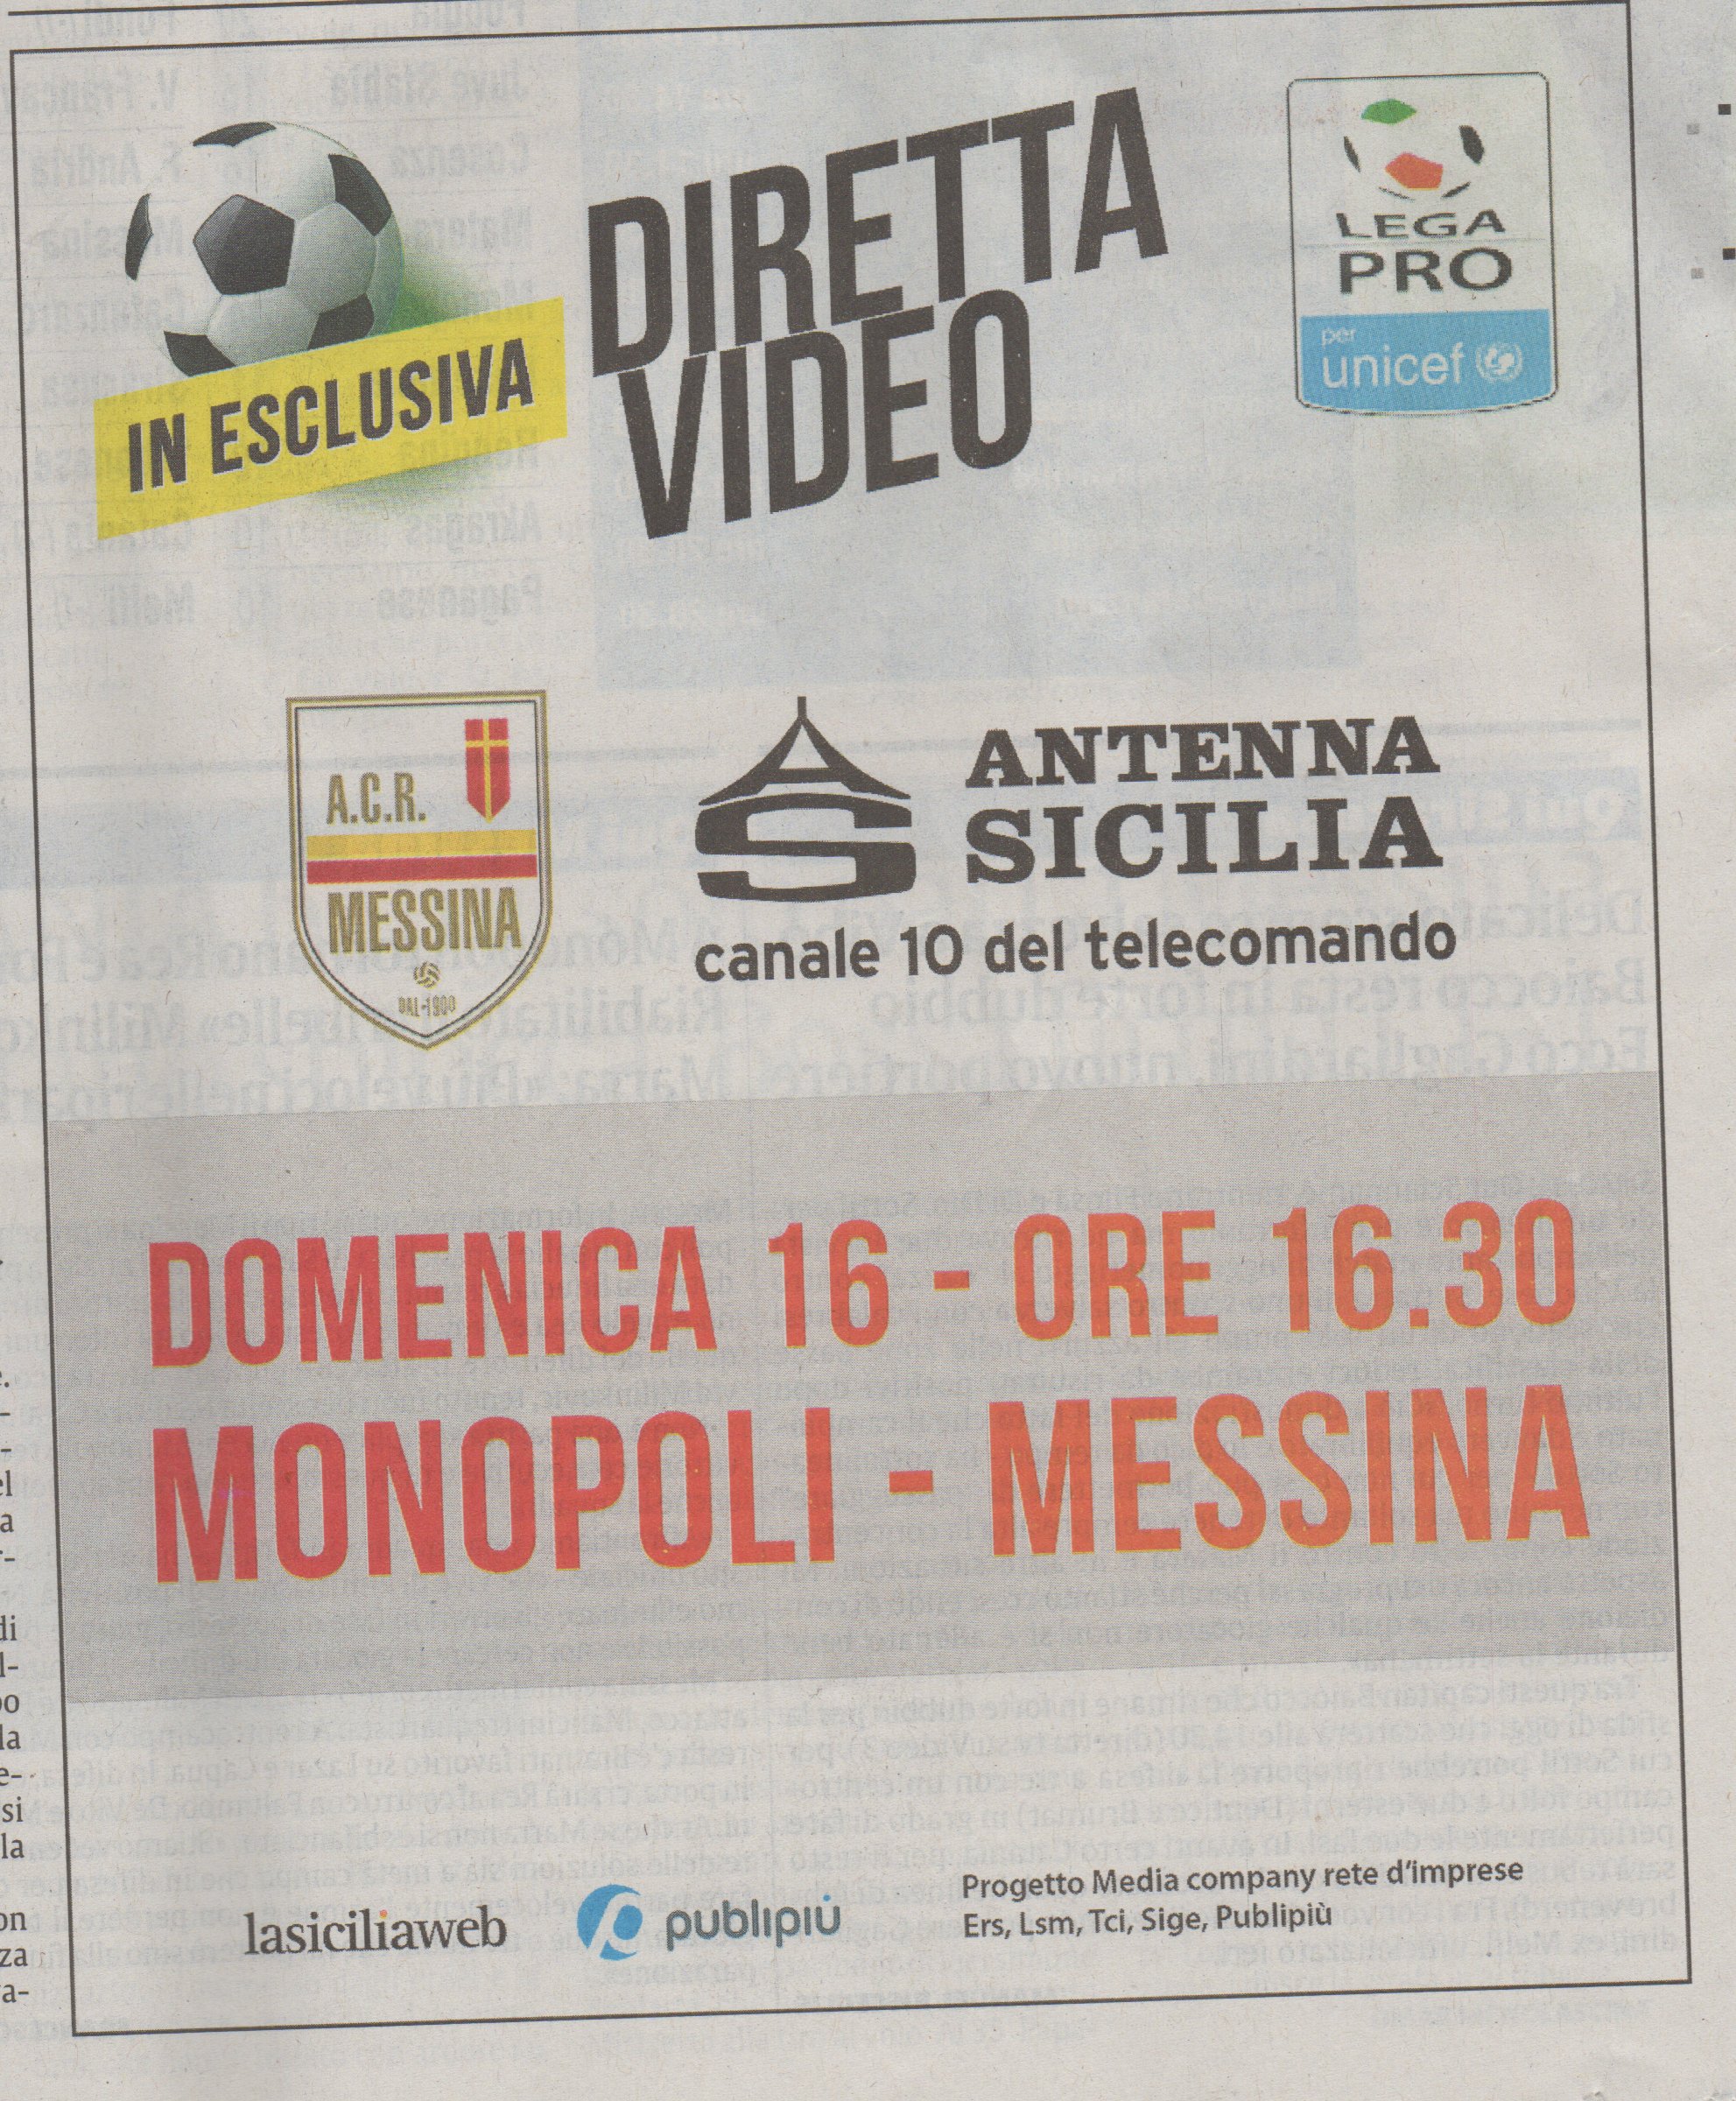 Diretta Antenna Sicilia Monopoli-Messina Domenica 16 alle 16.30